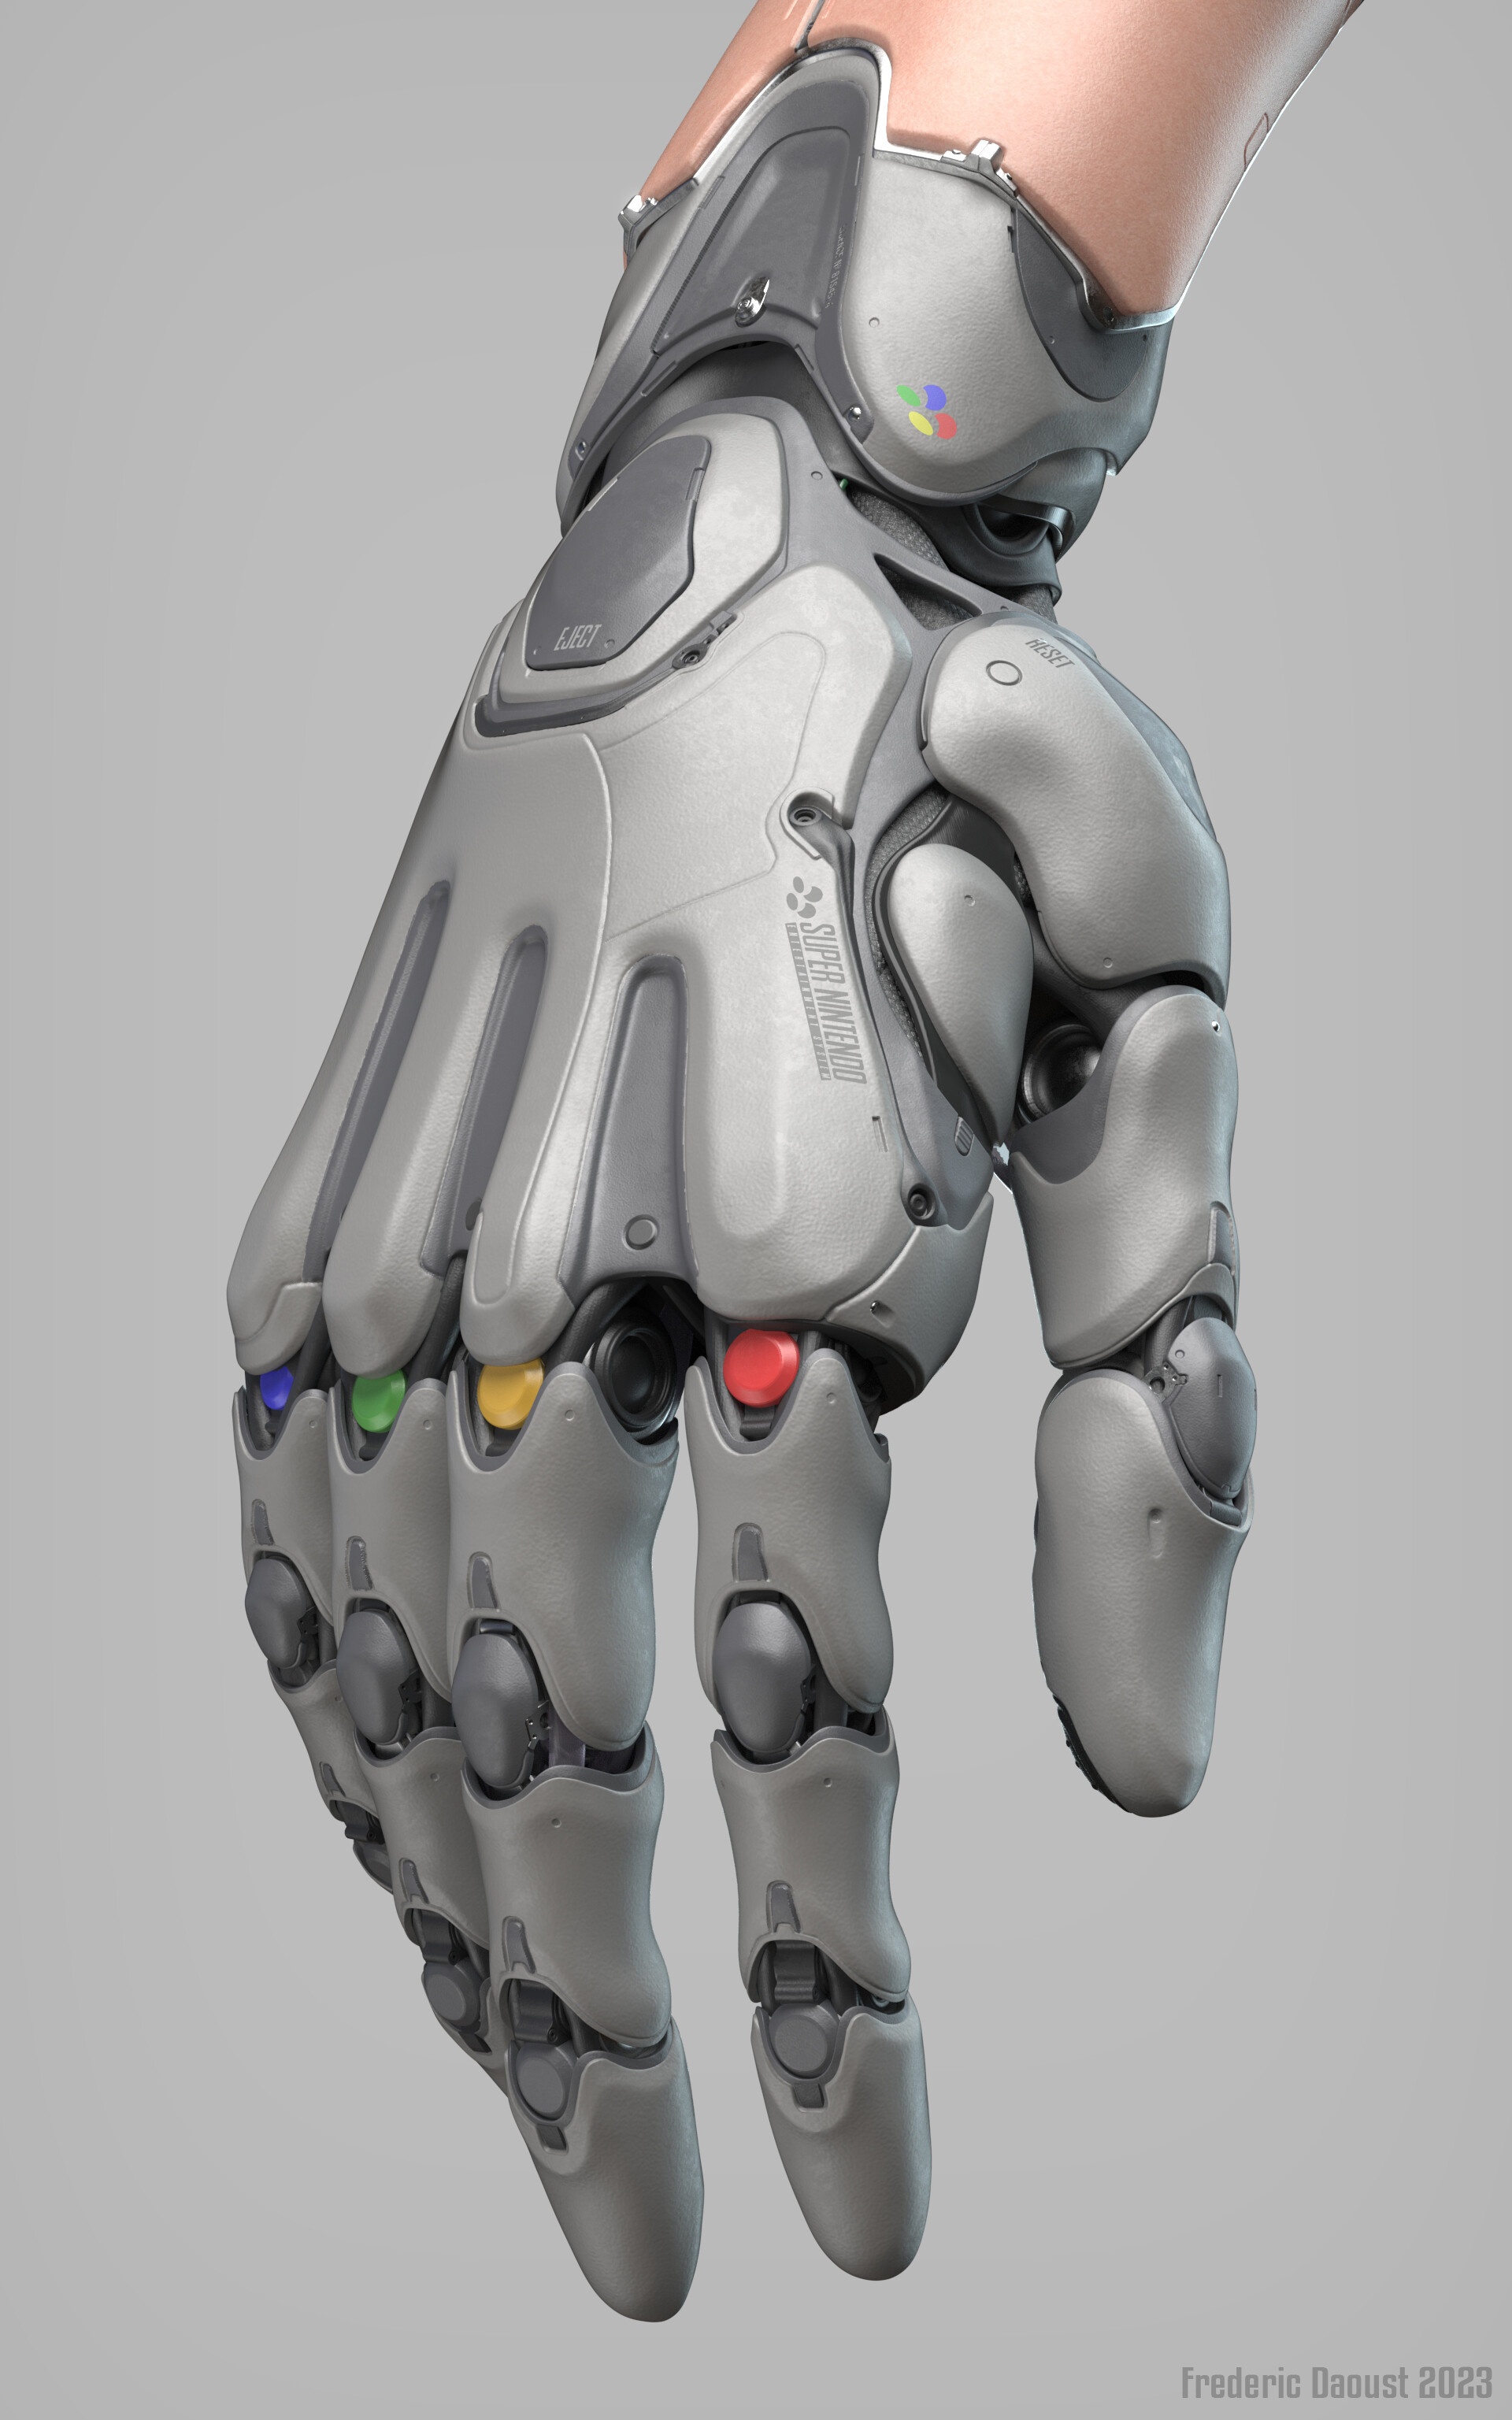 The Cyborg Artist Glove - Artist Glove